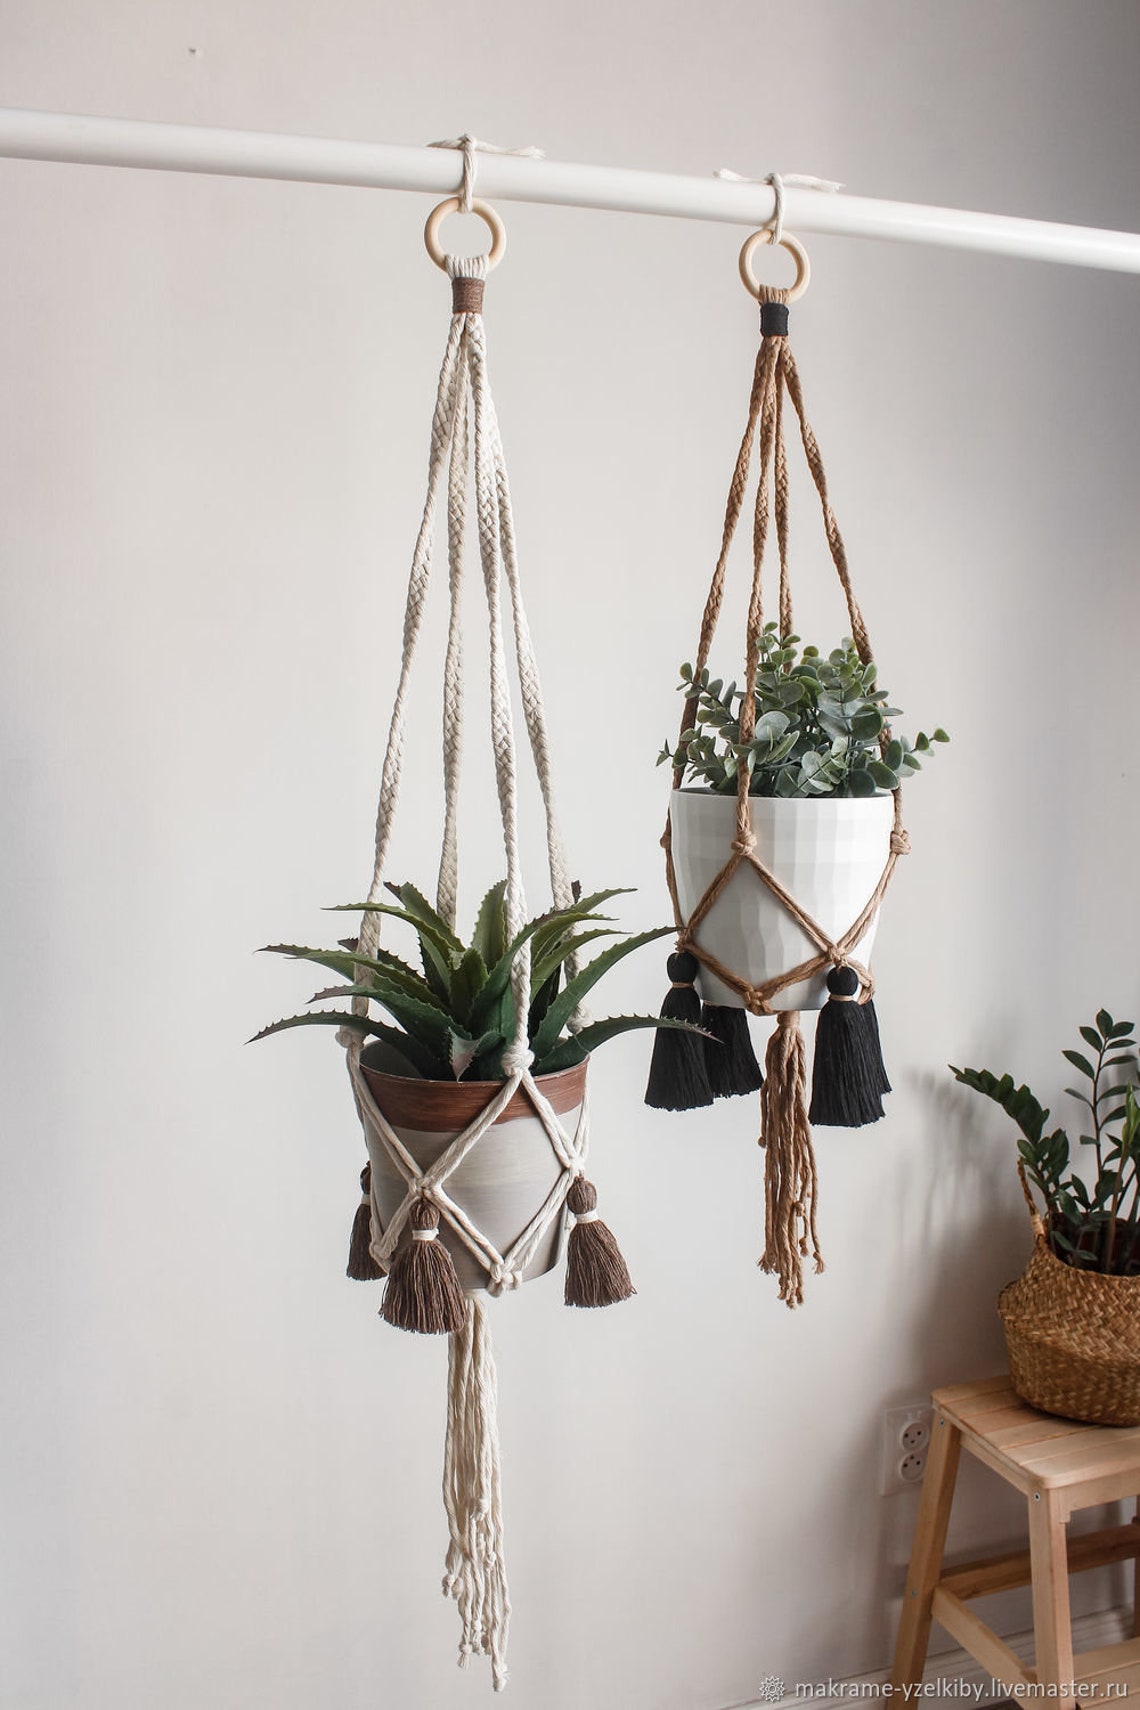 Hanging planter wood ring / Macrame plant hanger / Hanging | Etsy